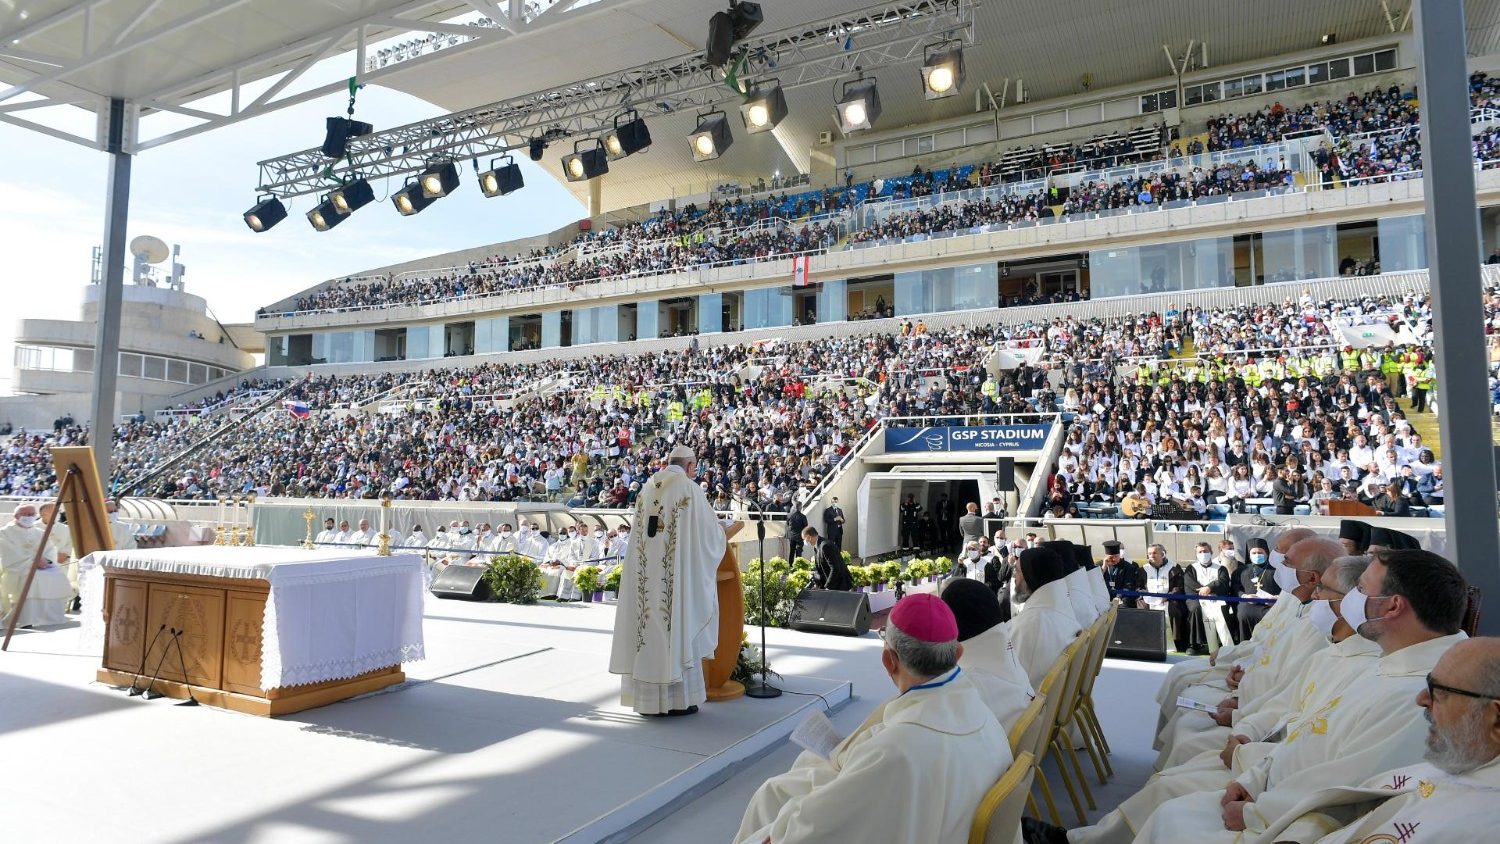 ĐTC dâng Thánh lễ tại Sân vận động GSP của Sýp